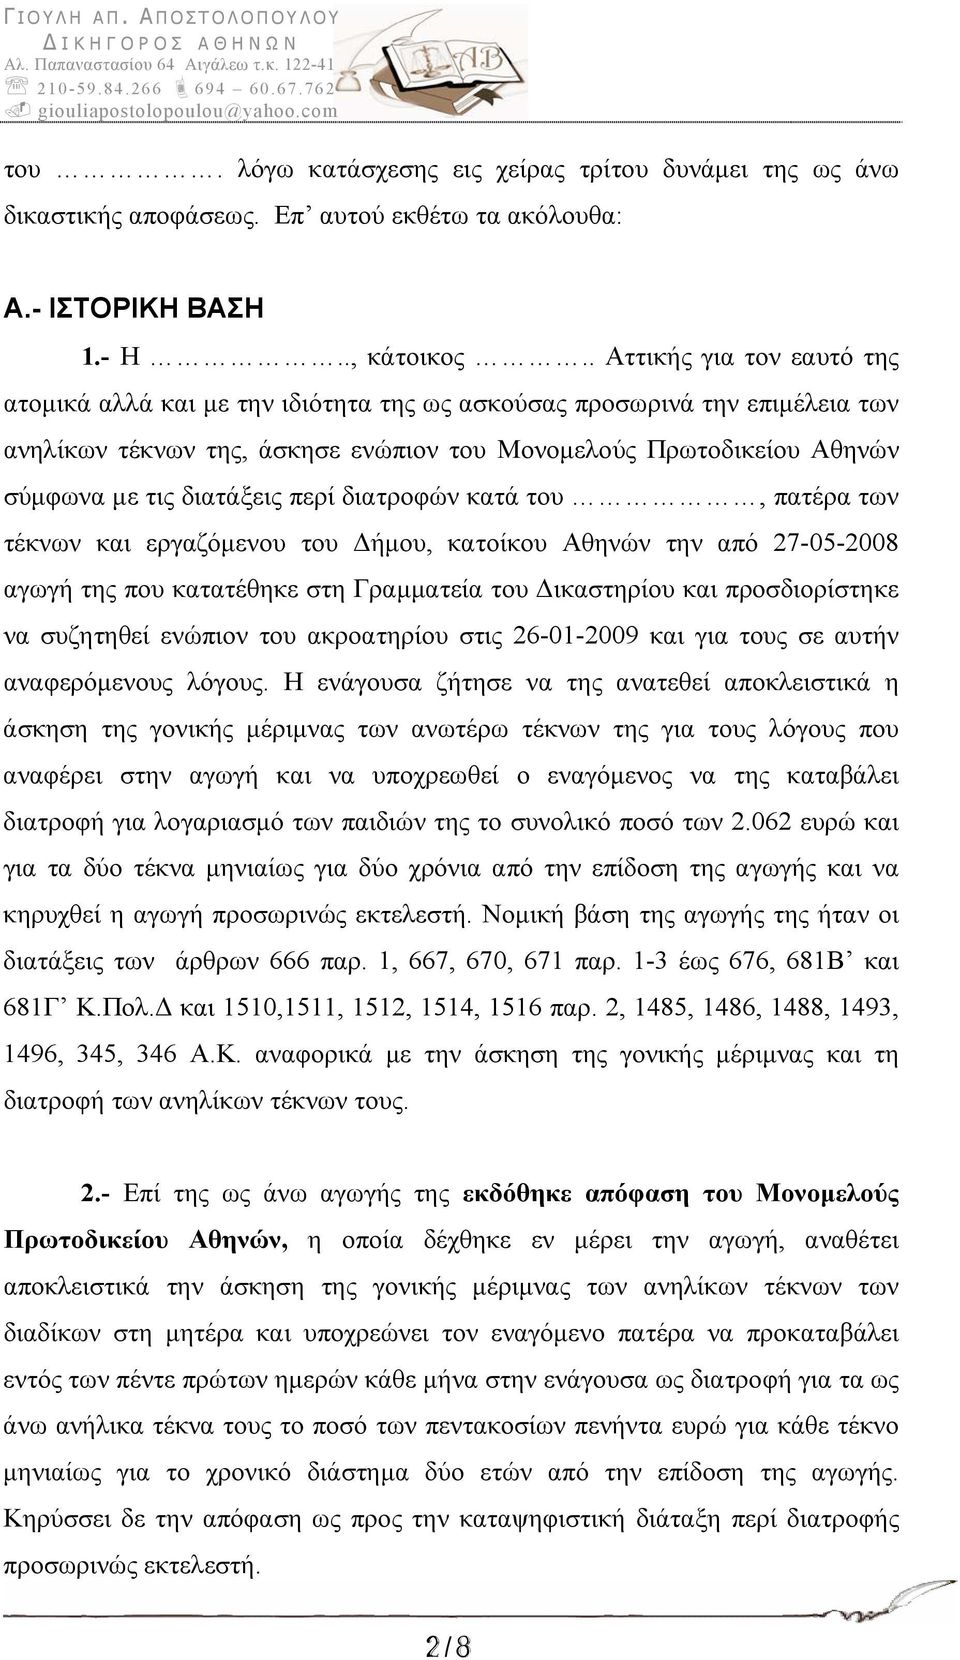 διατάξεις περί διατροφών κατά του, πατέρα των τέκνων και εργαζόμενου του Δήμου, κατοίκου Αθηνών την από 27-05-2008 αγωγή της που κατατέθηκε στη Γραμματεία του Δικαστηρίου και προσδιορίστηκε να